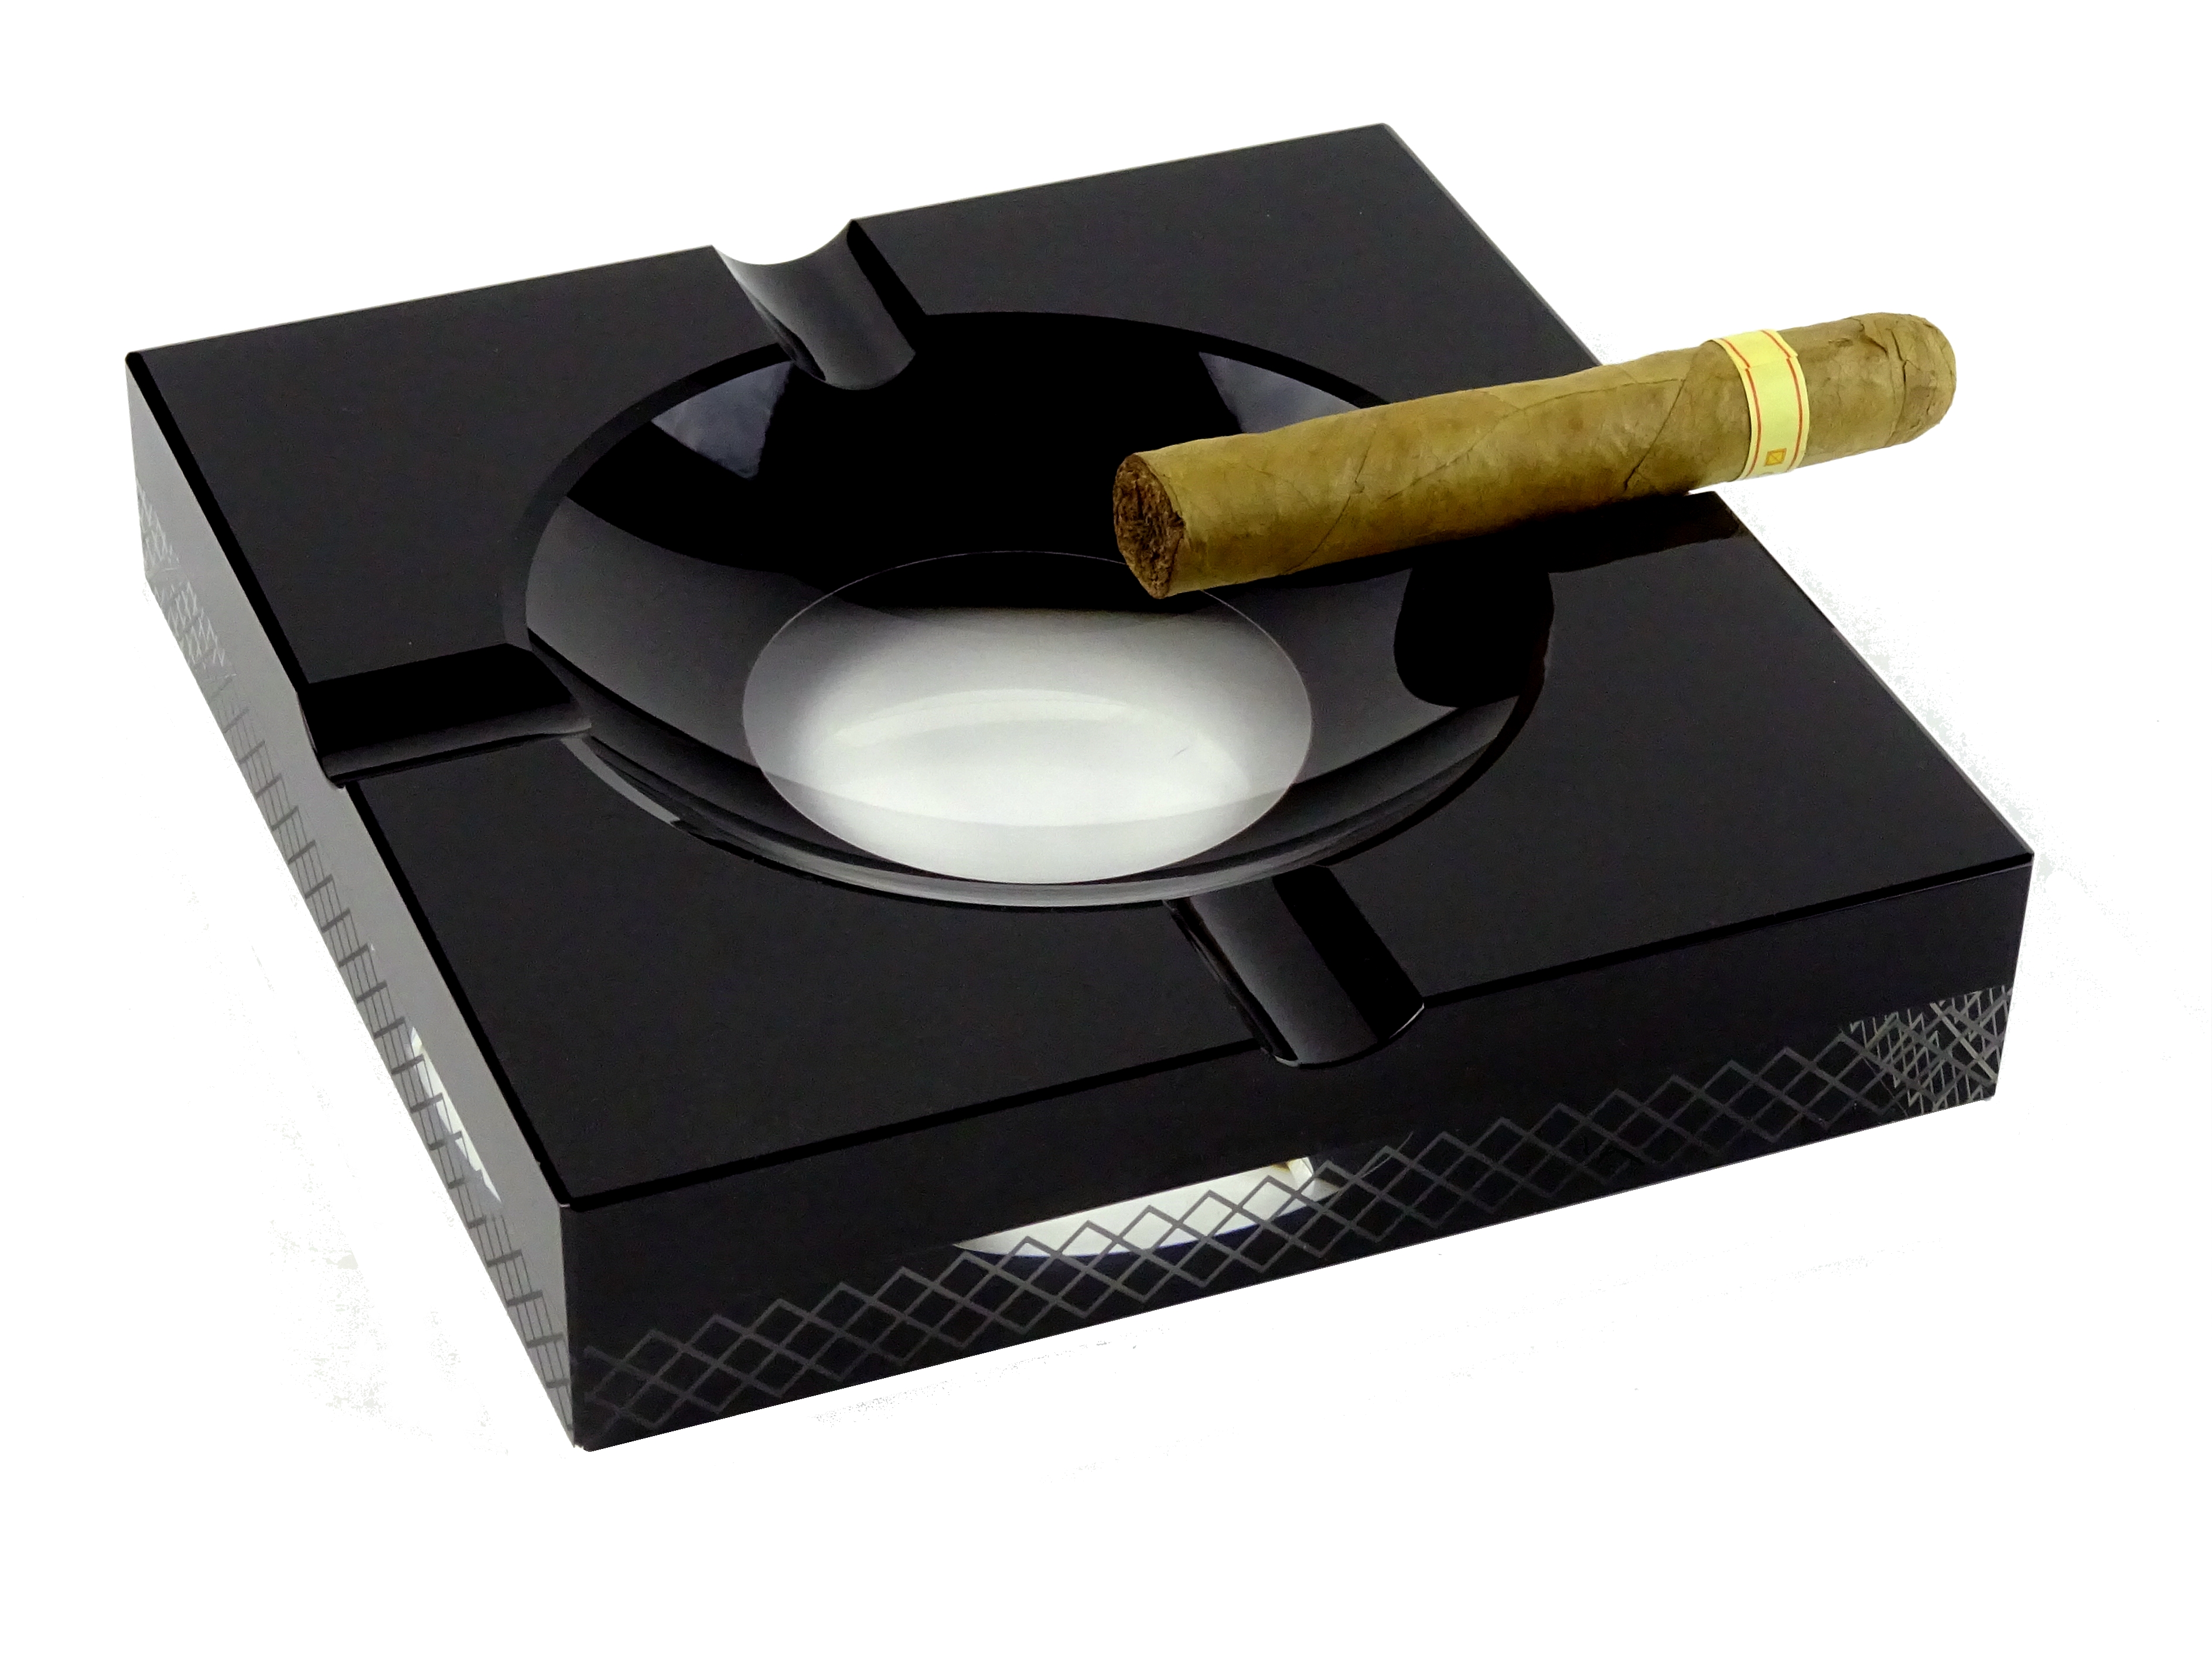 Zigarrenascher Keramik weiß 4 Ablagen 19,5 x 19,5 cm Zigarren Aschenbecher